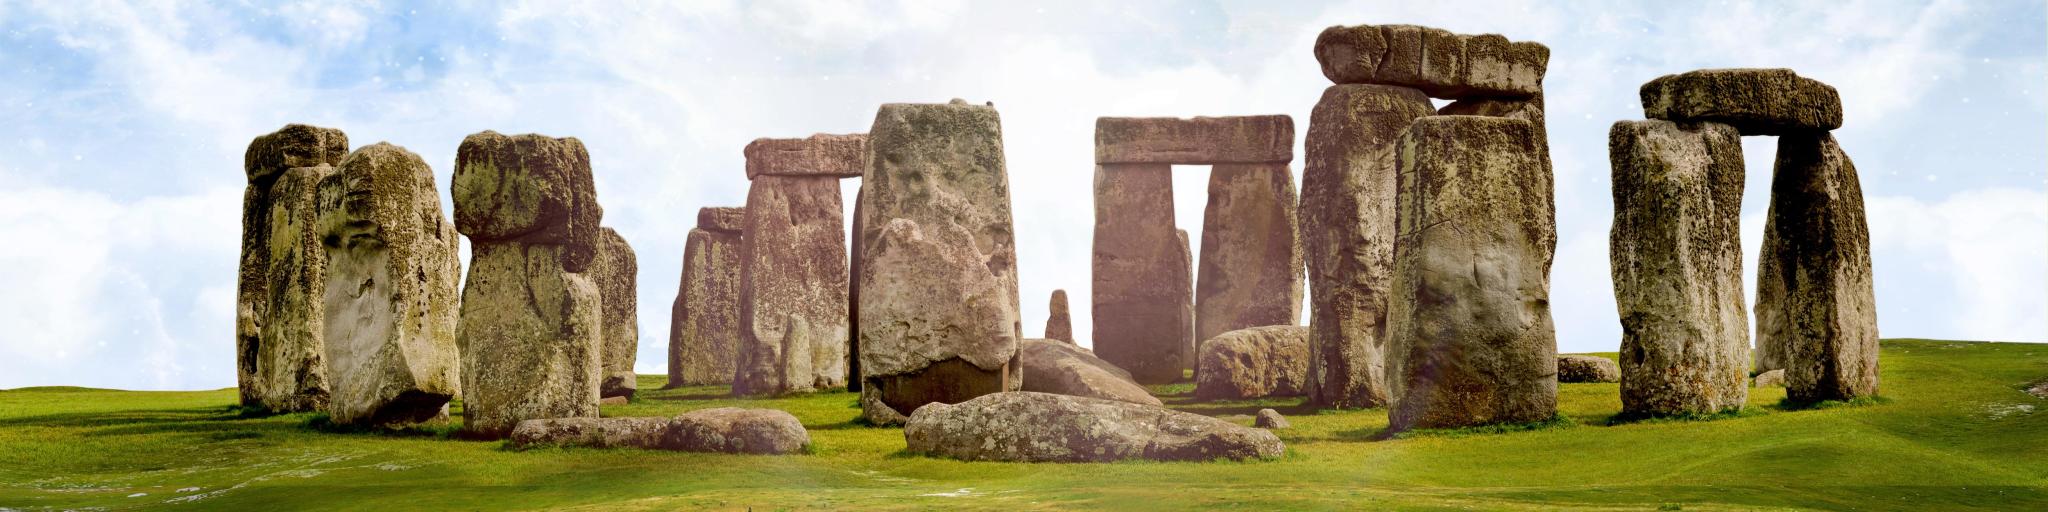 Stonehenge monument, England